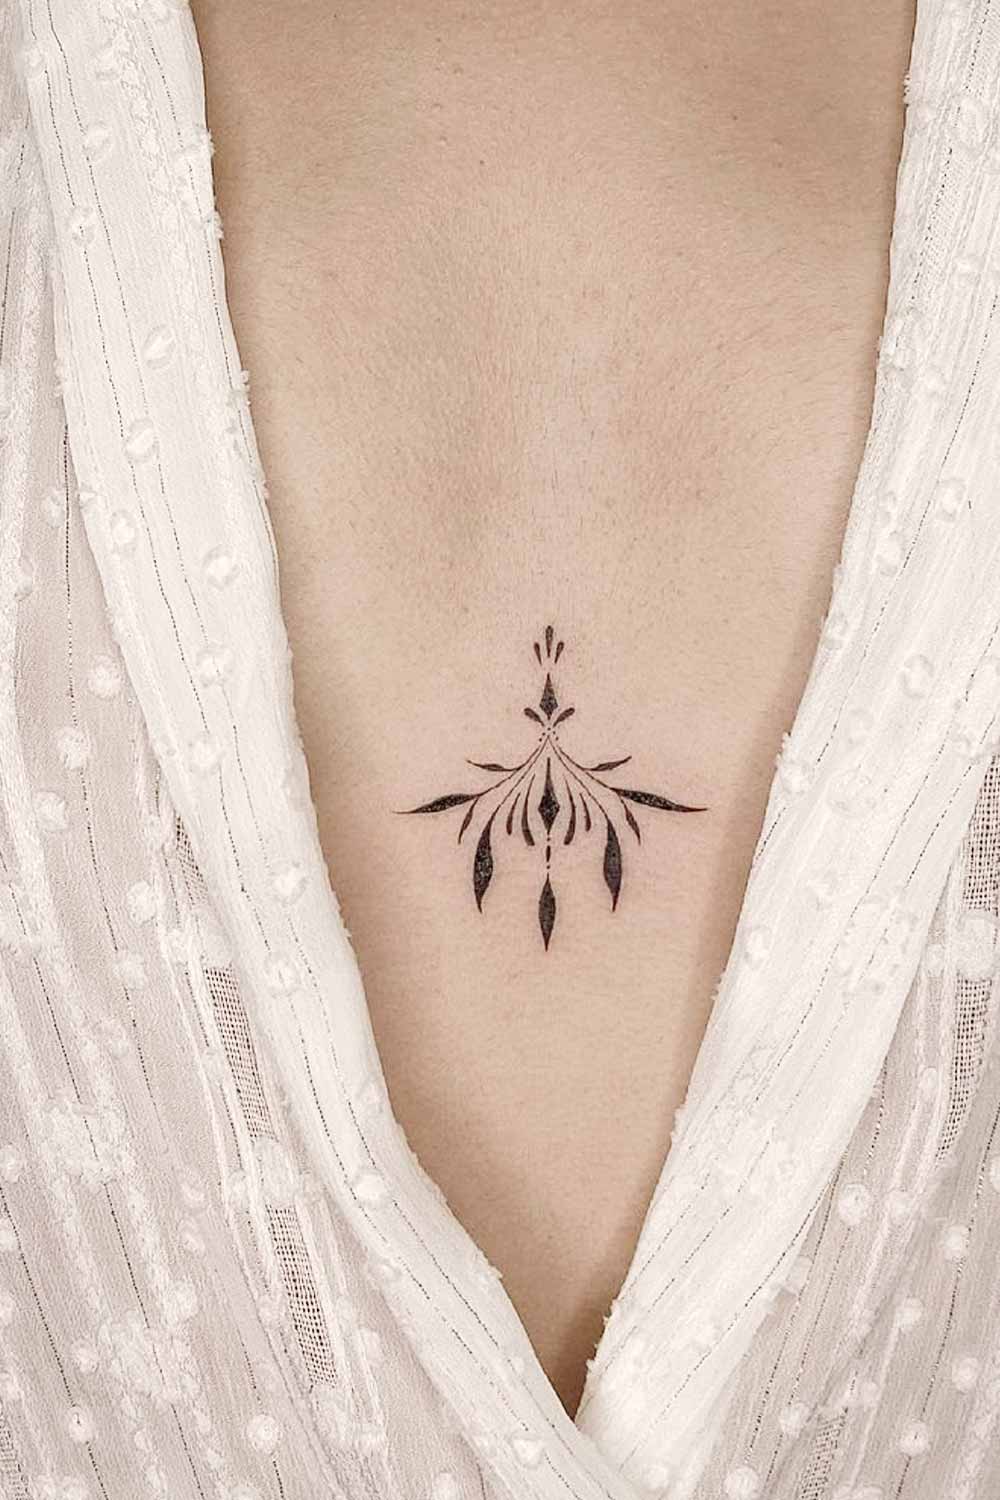 Mandala Tattoo / Chest Tattoo / Underboob Temporary Tattoo / Sternum Tattoo  / Yoga Tattoo / Minimalist Tattoo - Etsy Norway